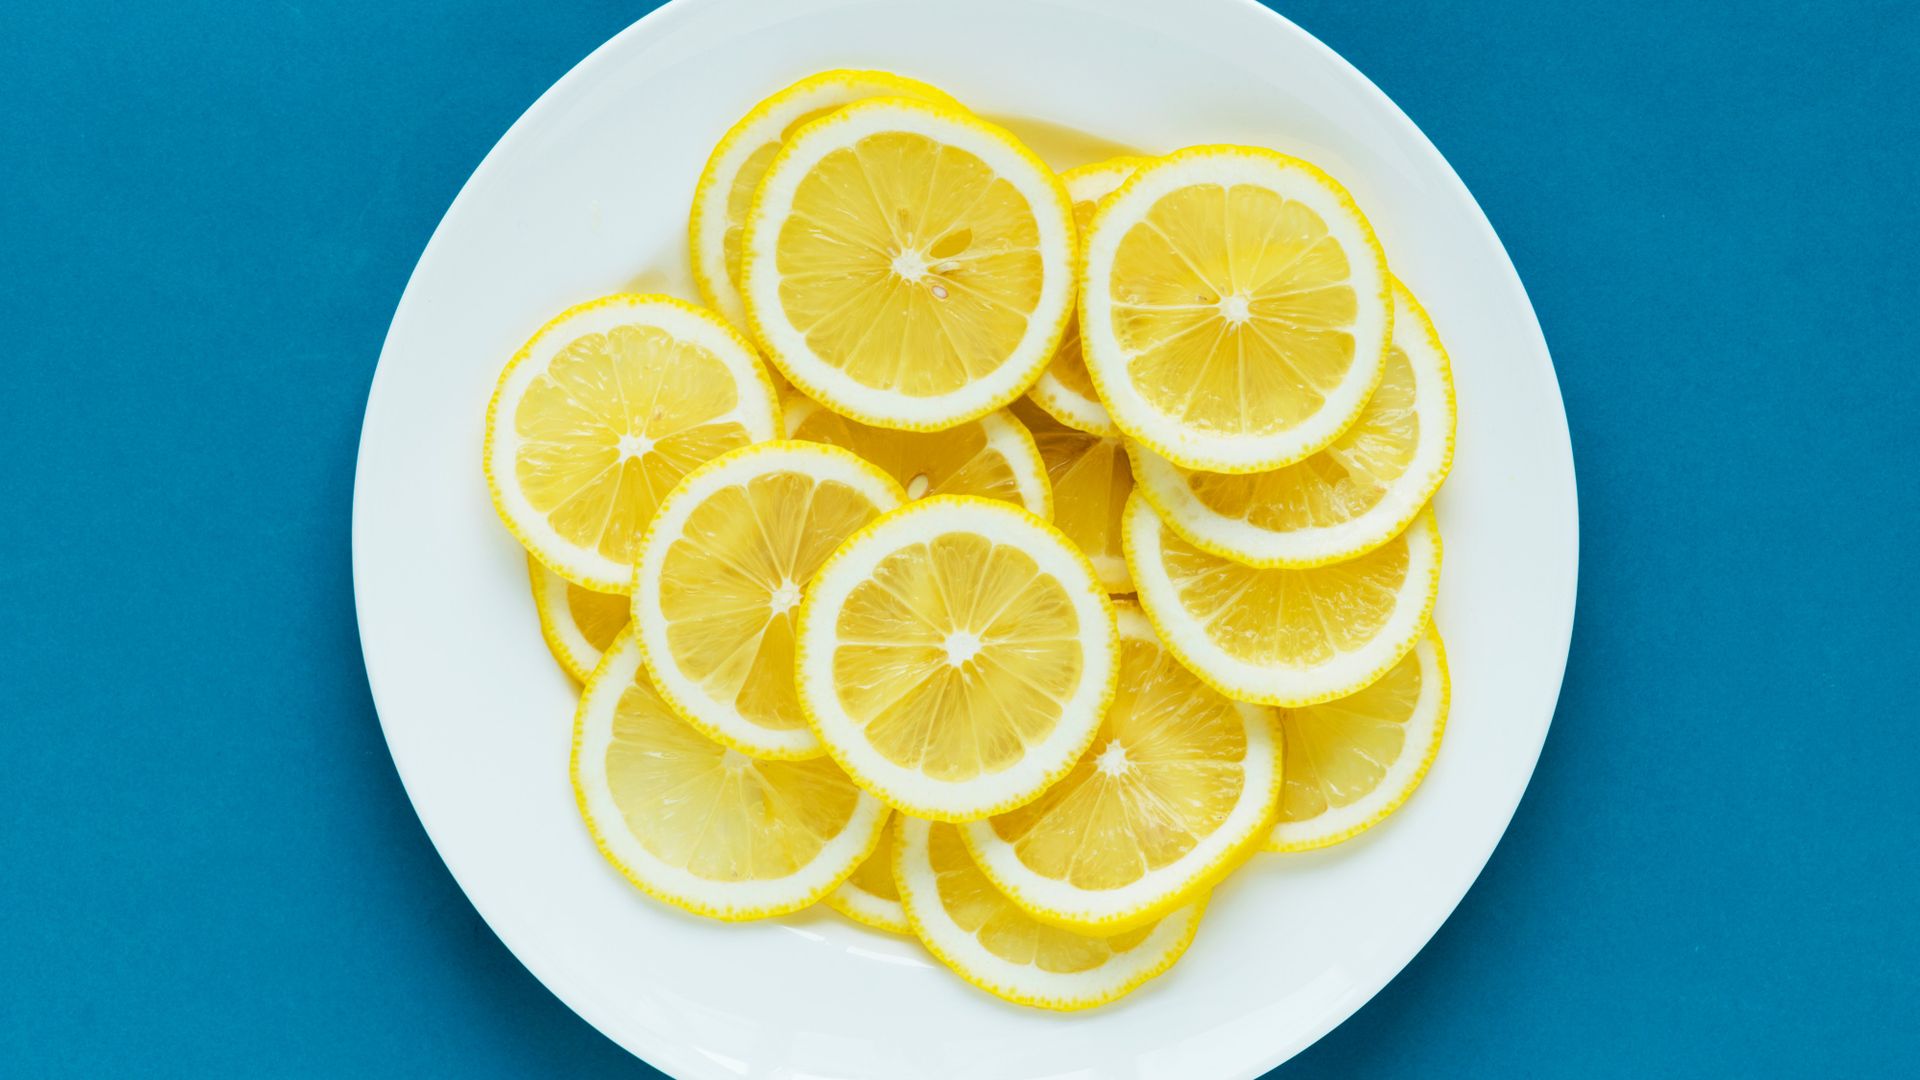 Plate Of Sliced Lemons - Lemon - HD Wallpaper 